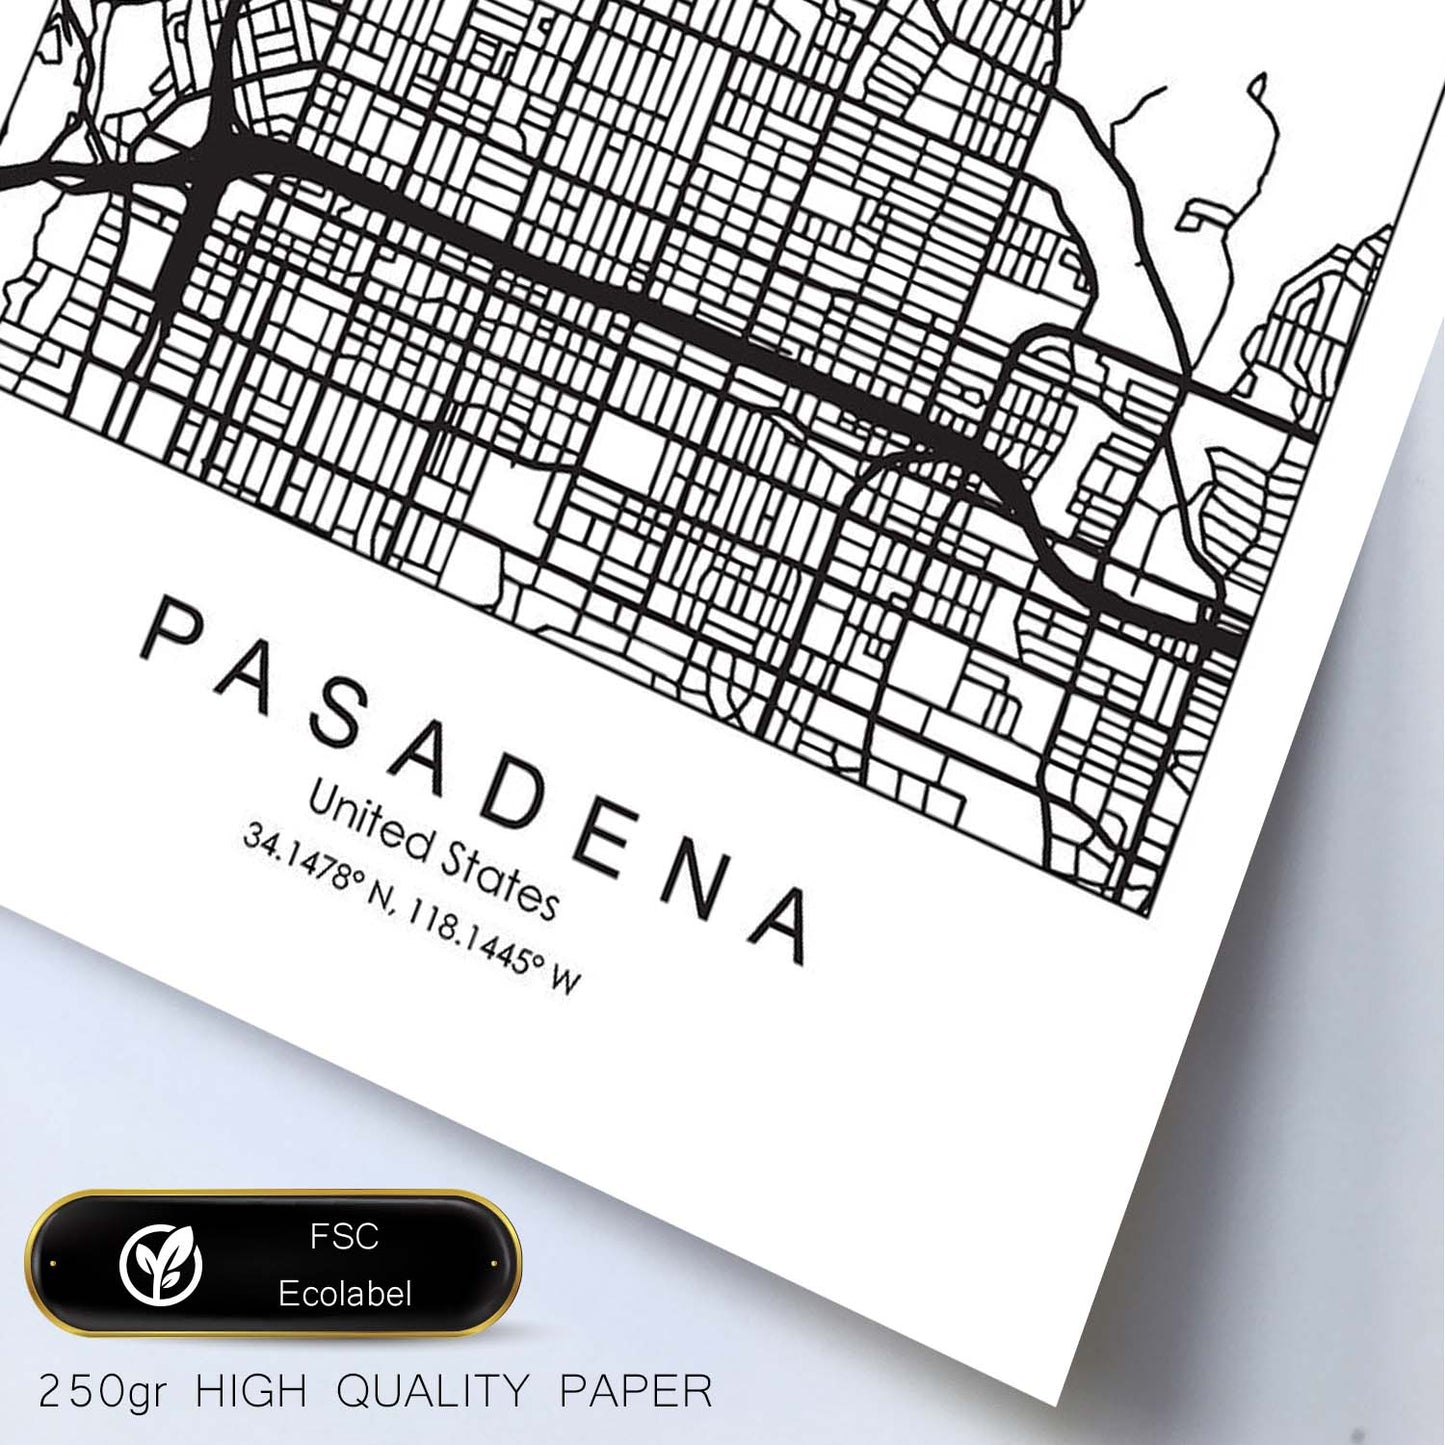 Poster con mapa de Pasadena. Lámina de Estados Unidos, con imágenes de mapas y carreteras-Artwork-Nacnic-Nacnic Estudio SL